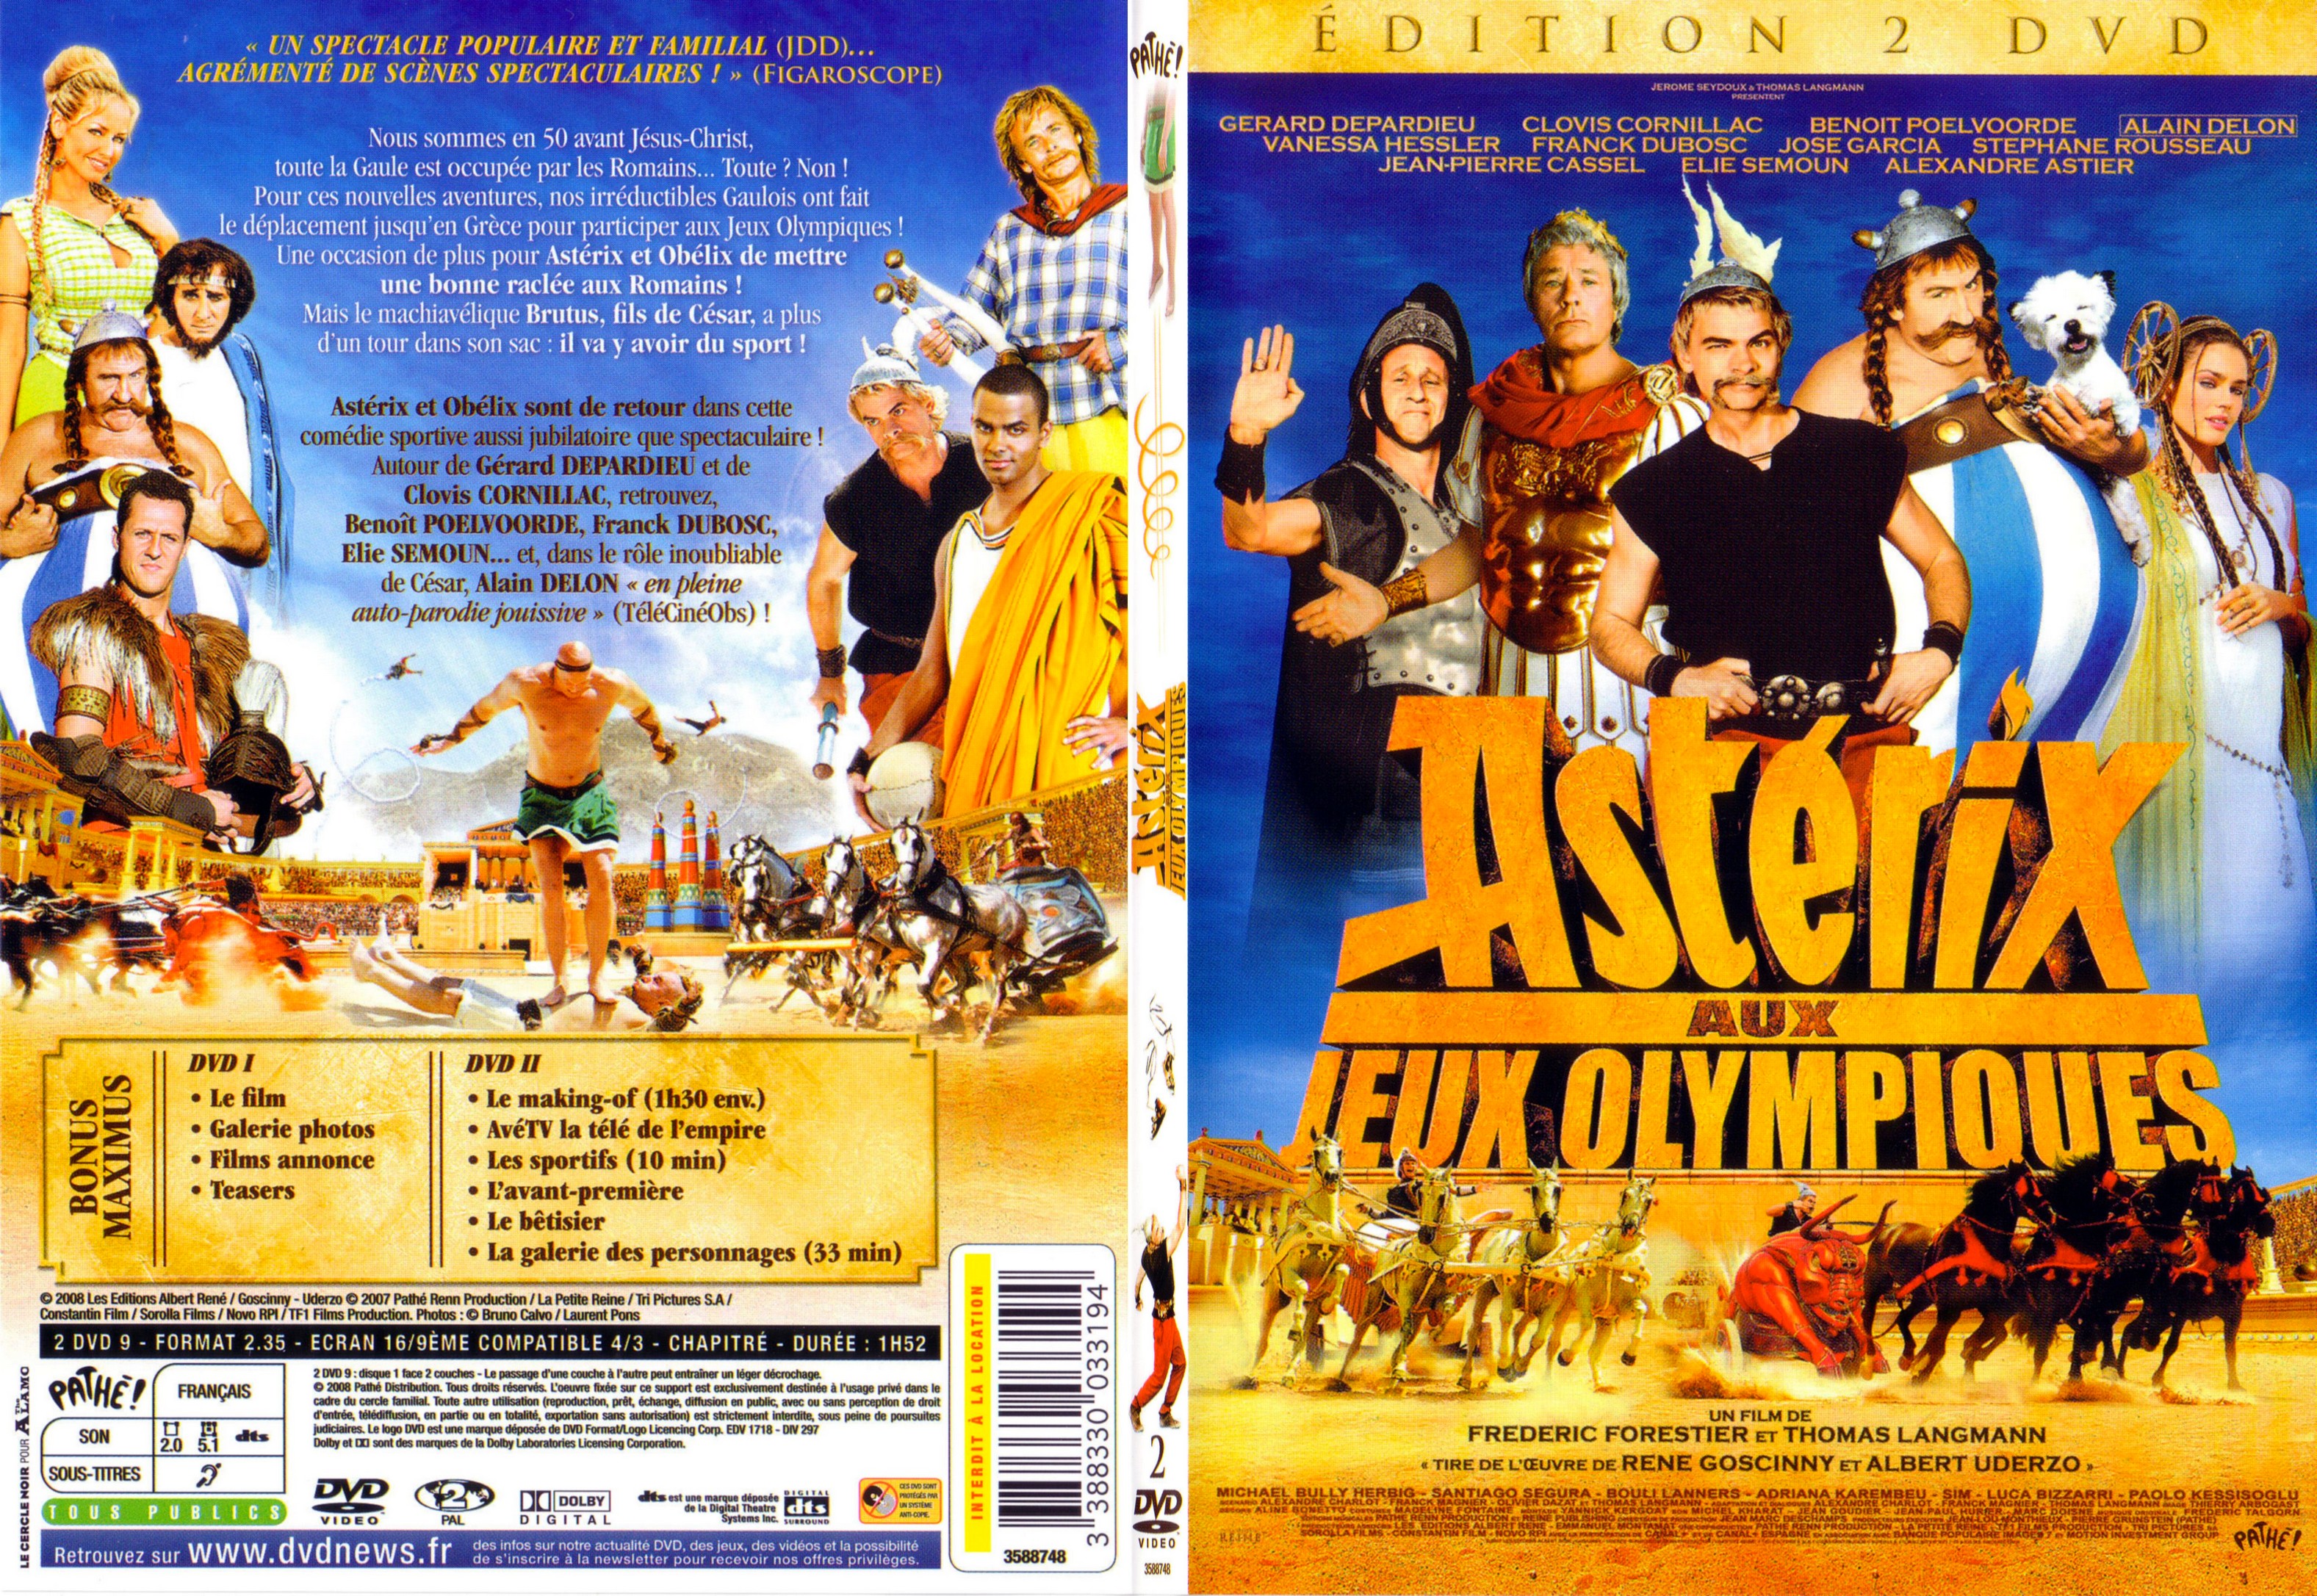 Jaquette DVD Asterix aux Jeux Olympiques - SLIM